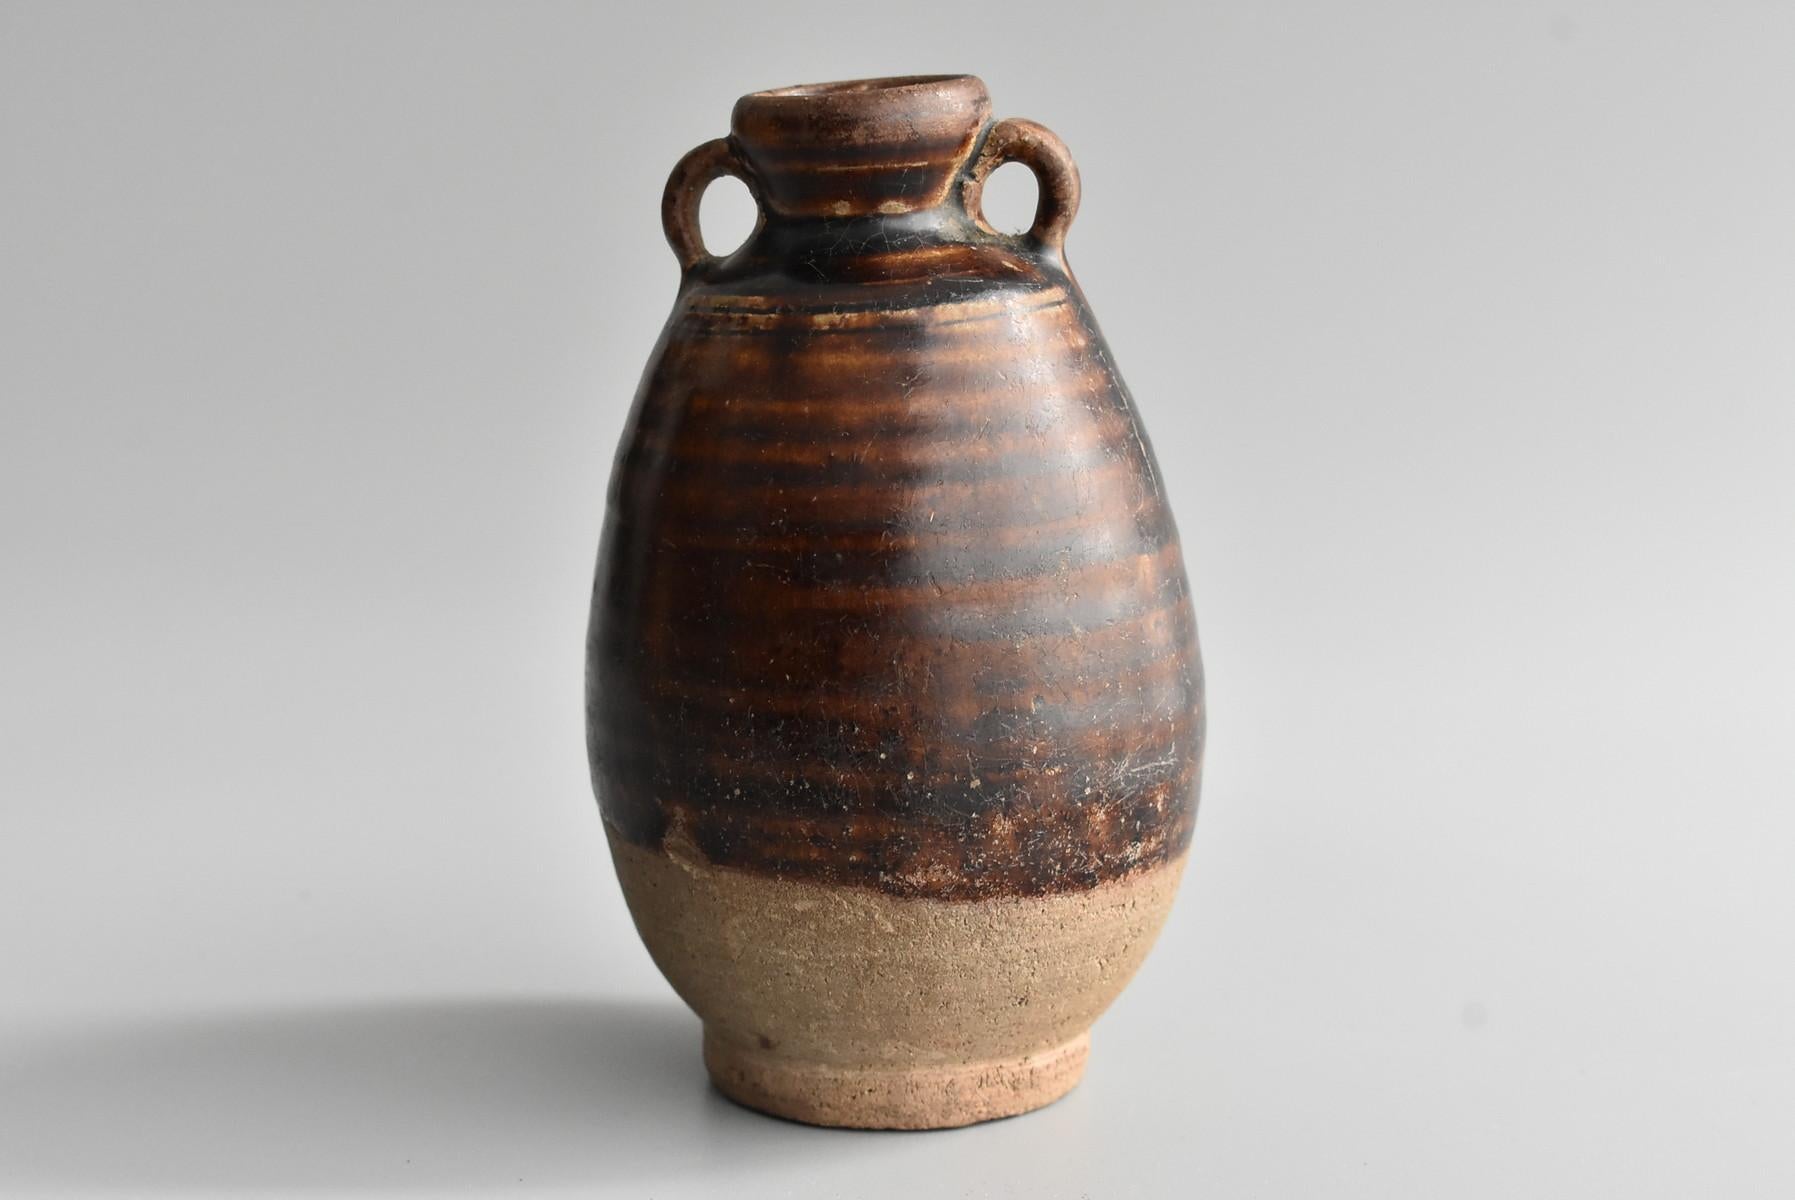 Folk Art Thai Antique Bottle 15th Century / Old Vase / Southeast Asian Antiques